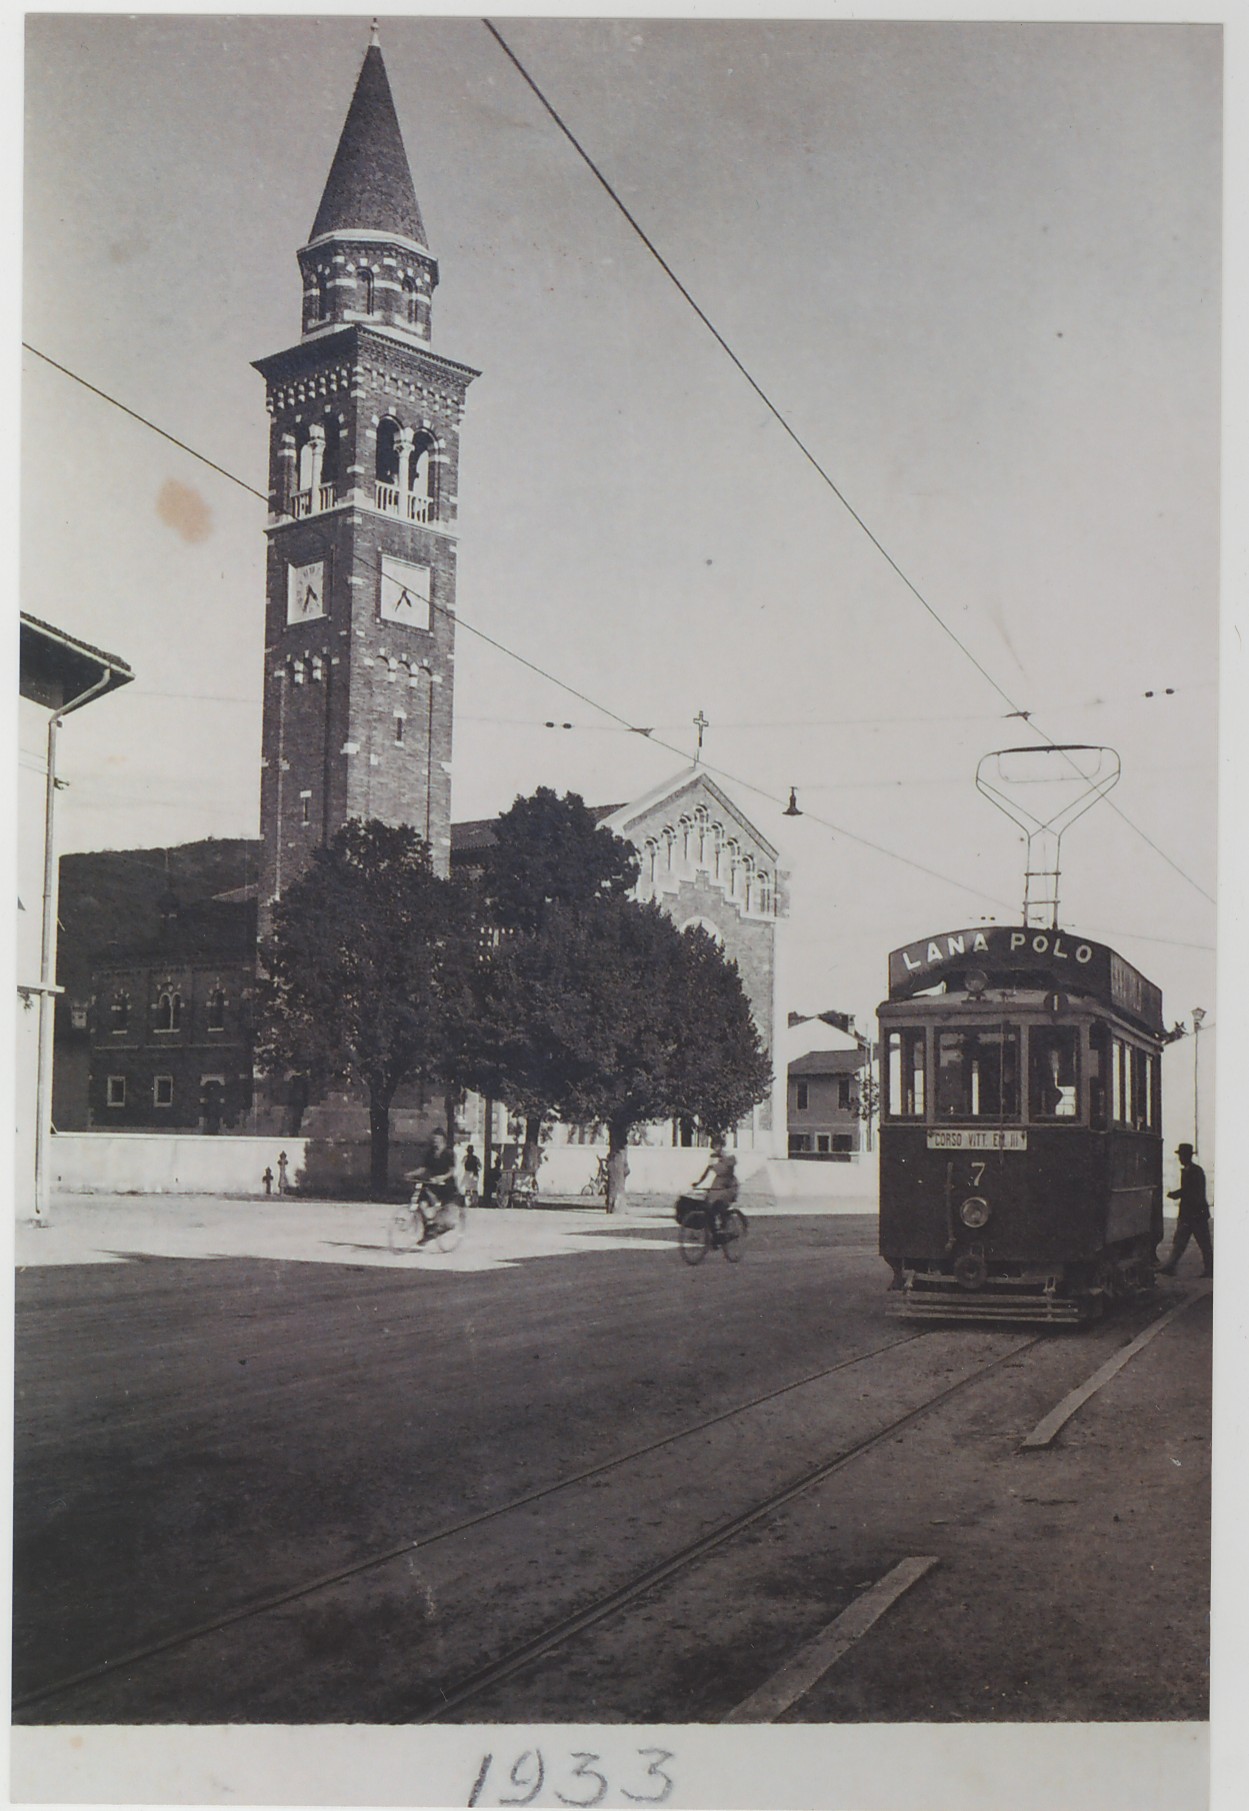 Slika 4: Šempeter pri Gorici - obnovljena cerkev in glavna ulica,
                            1933